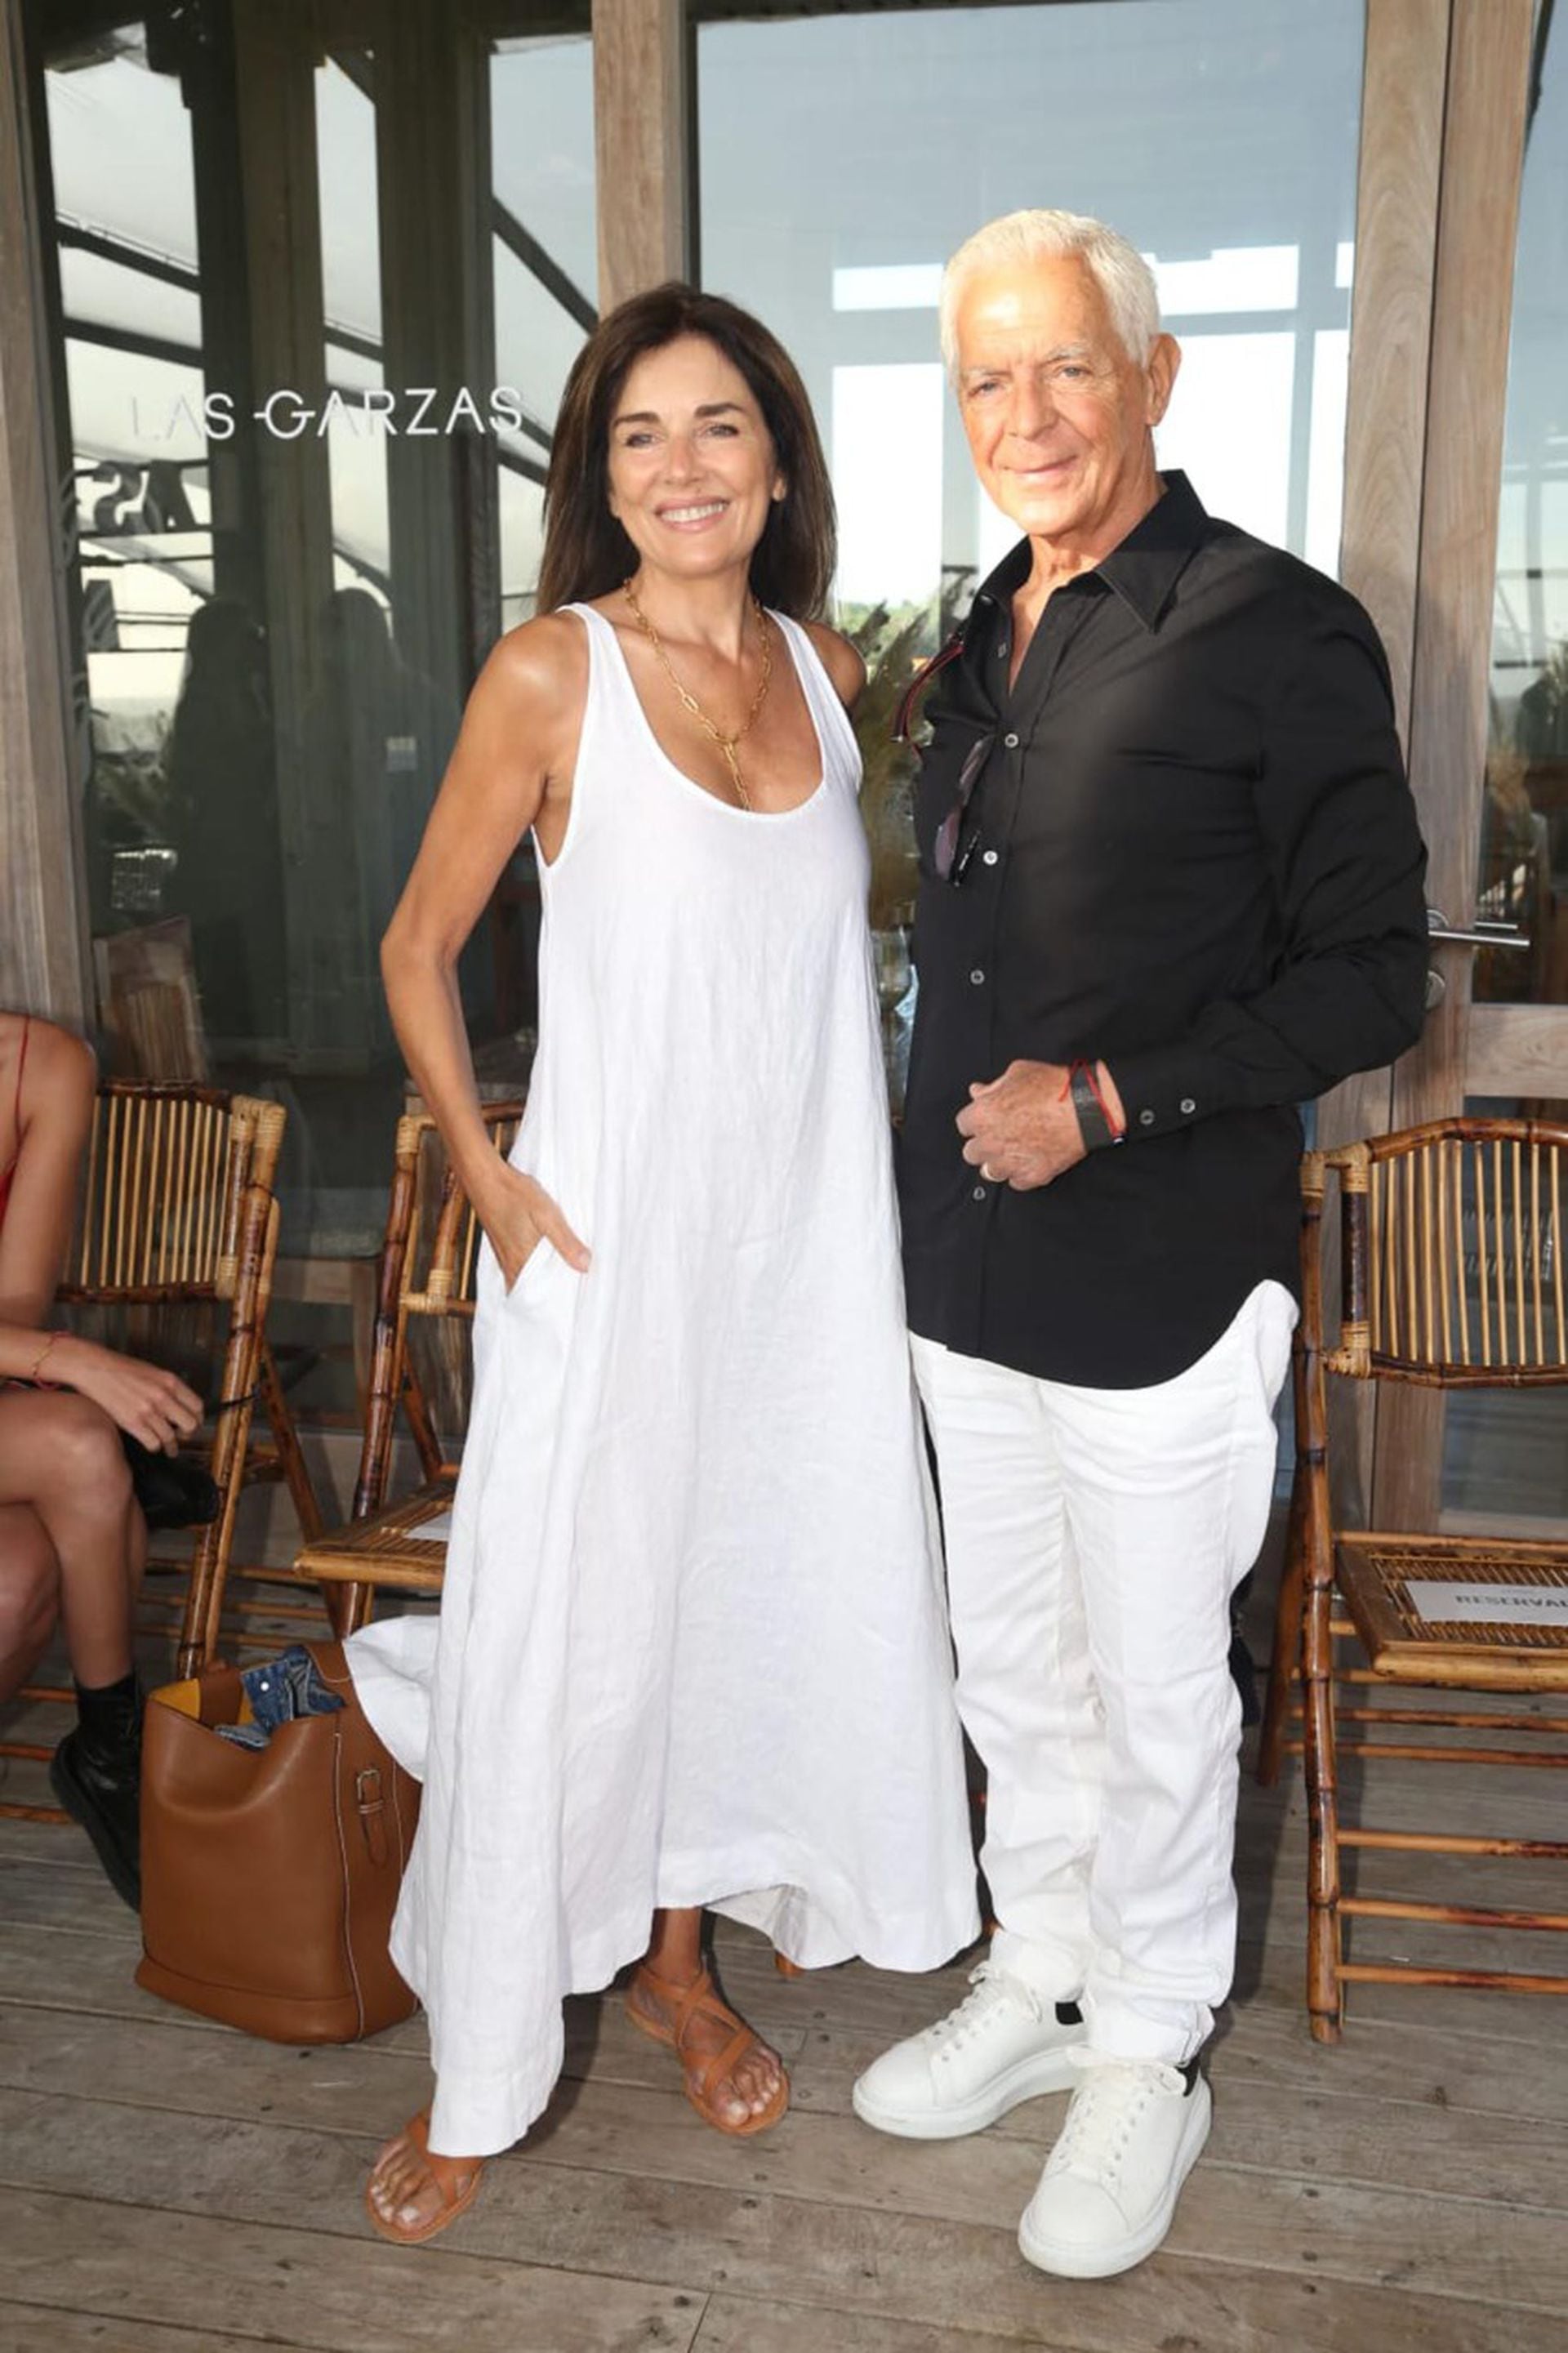 Andrea Frigerio, con vestido de lino blanco, y Eduardo Costantini conversaron previo al desfile